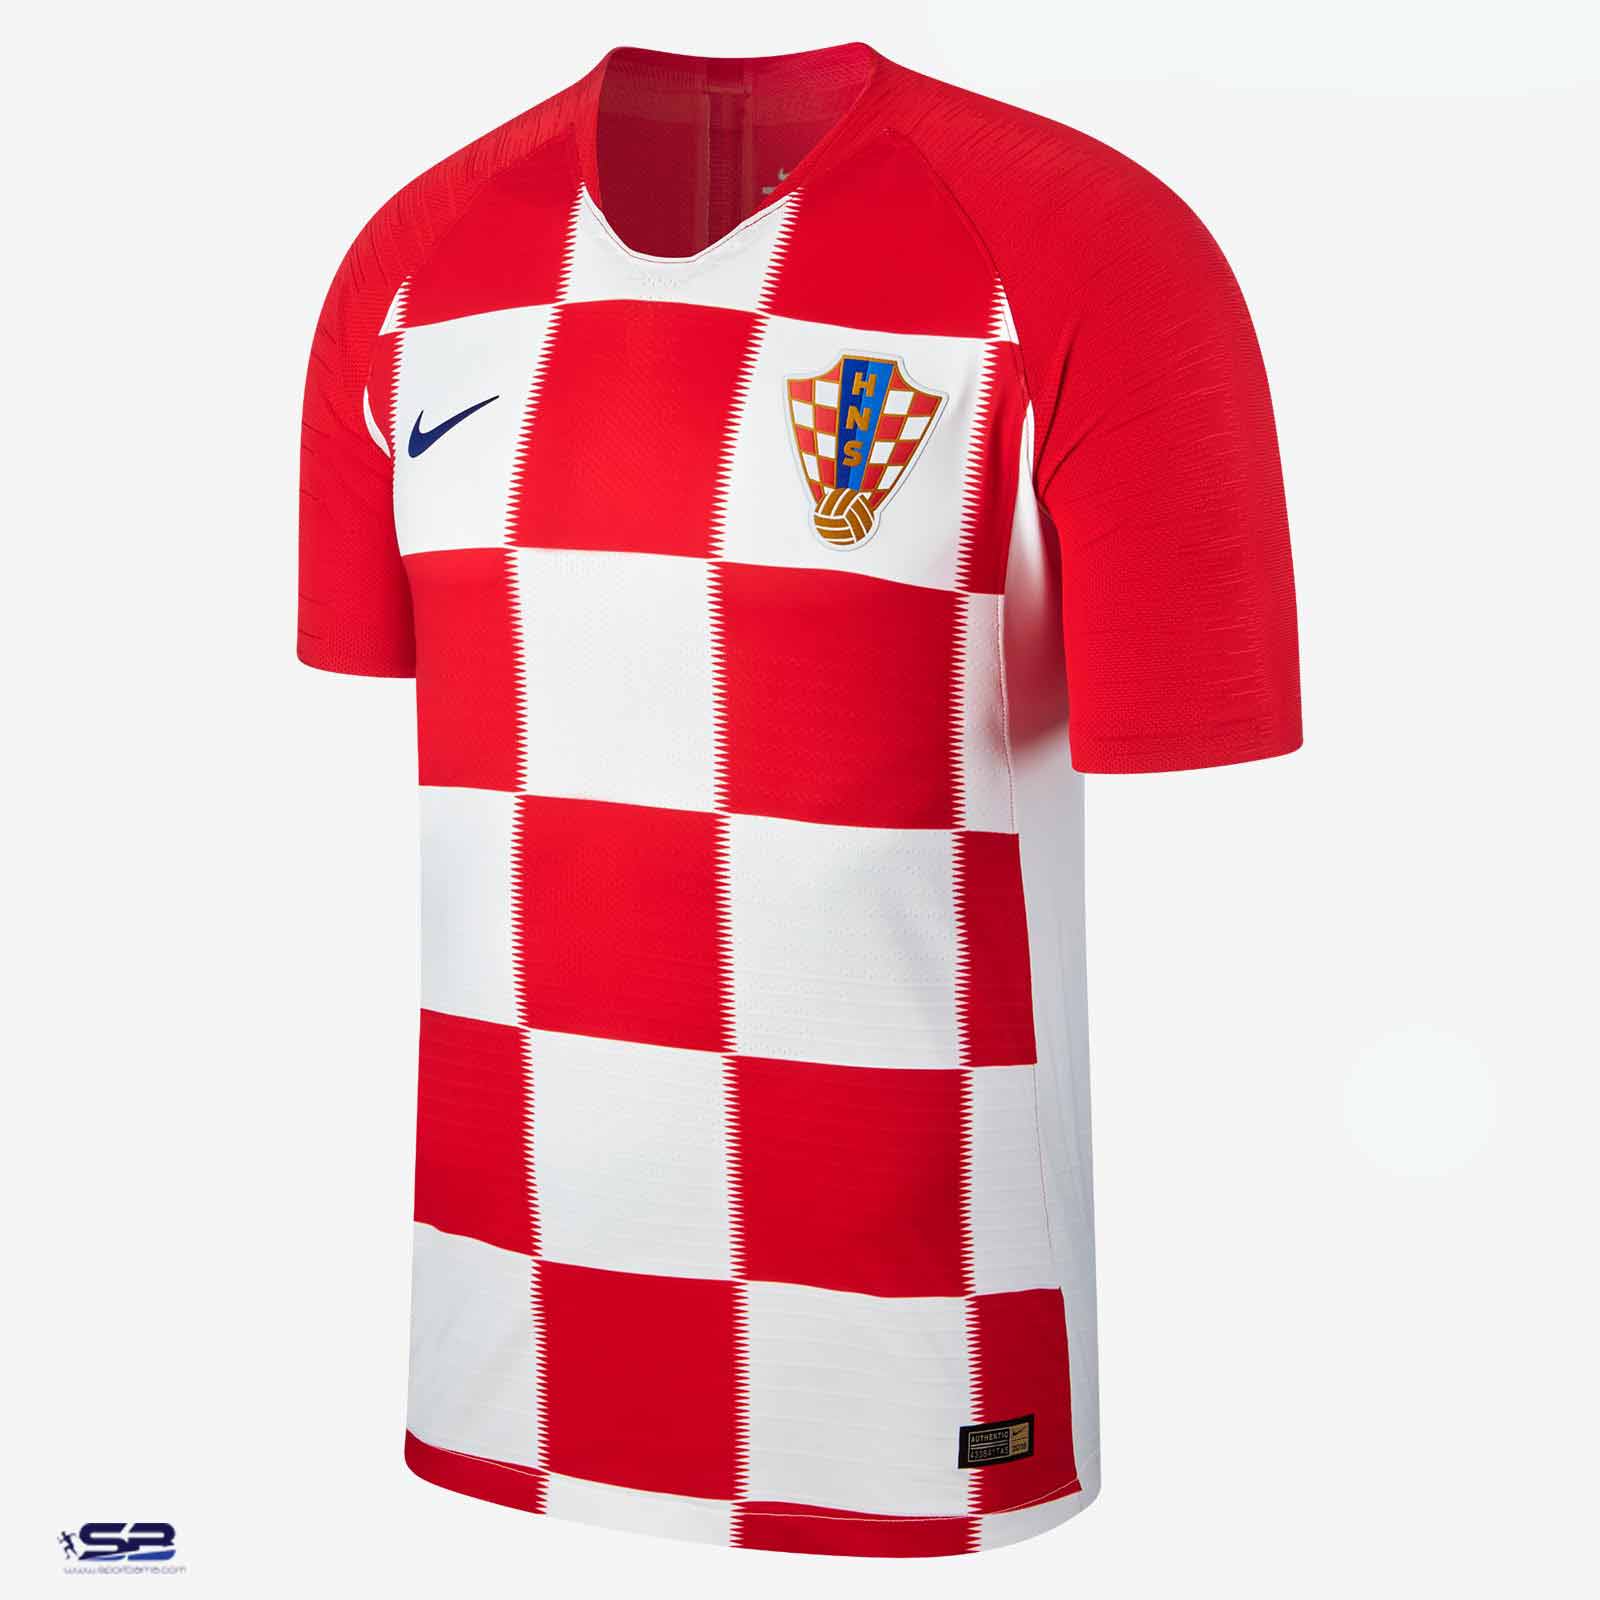  خرید  پیراهن تیم ملی کرواسی برای جام جهانی 2018